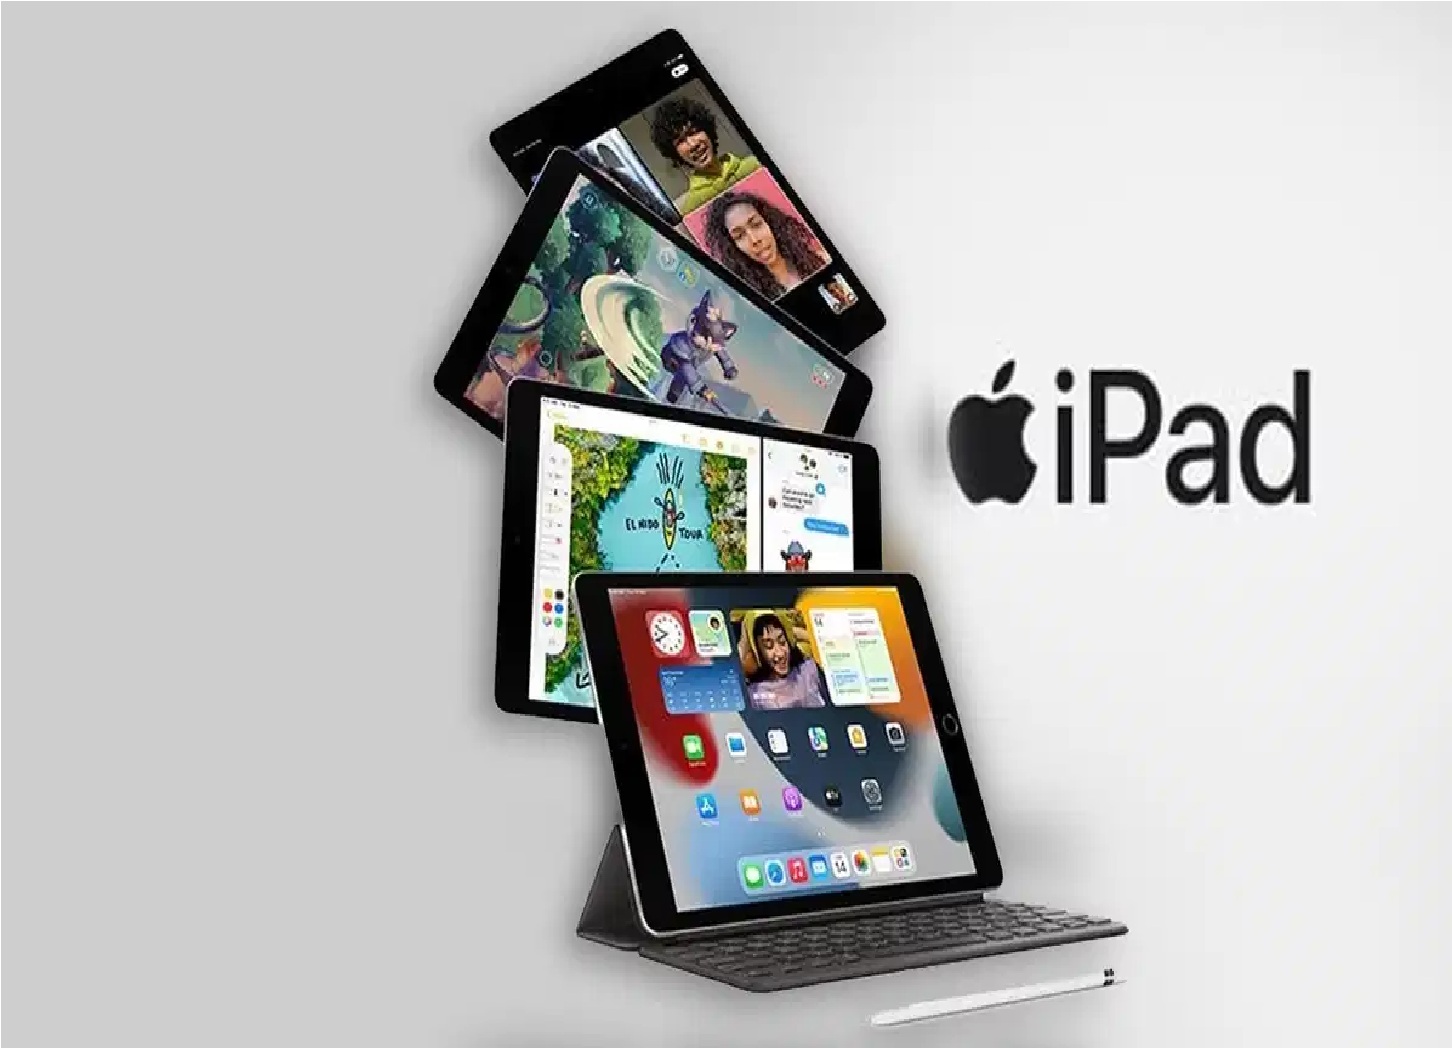 ऐपल iPad Air खरीदने के लिए अब नहीं पड़ेगा सोचना, मिल रहा है ₹9000 सस्ते दाम पर